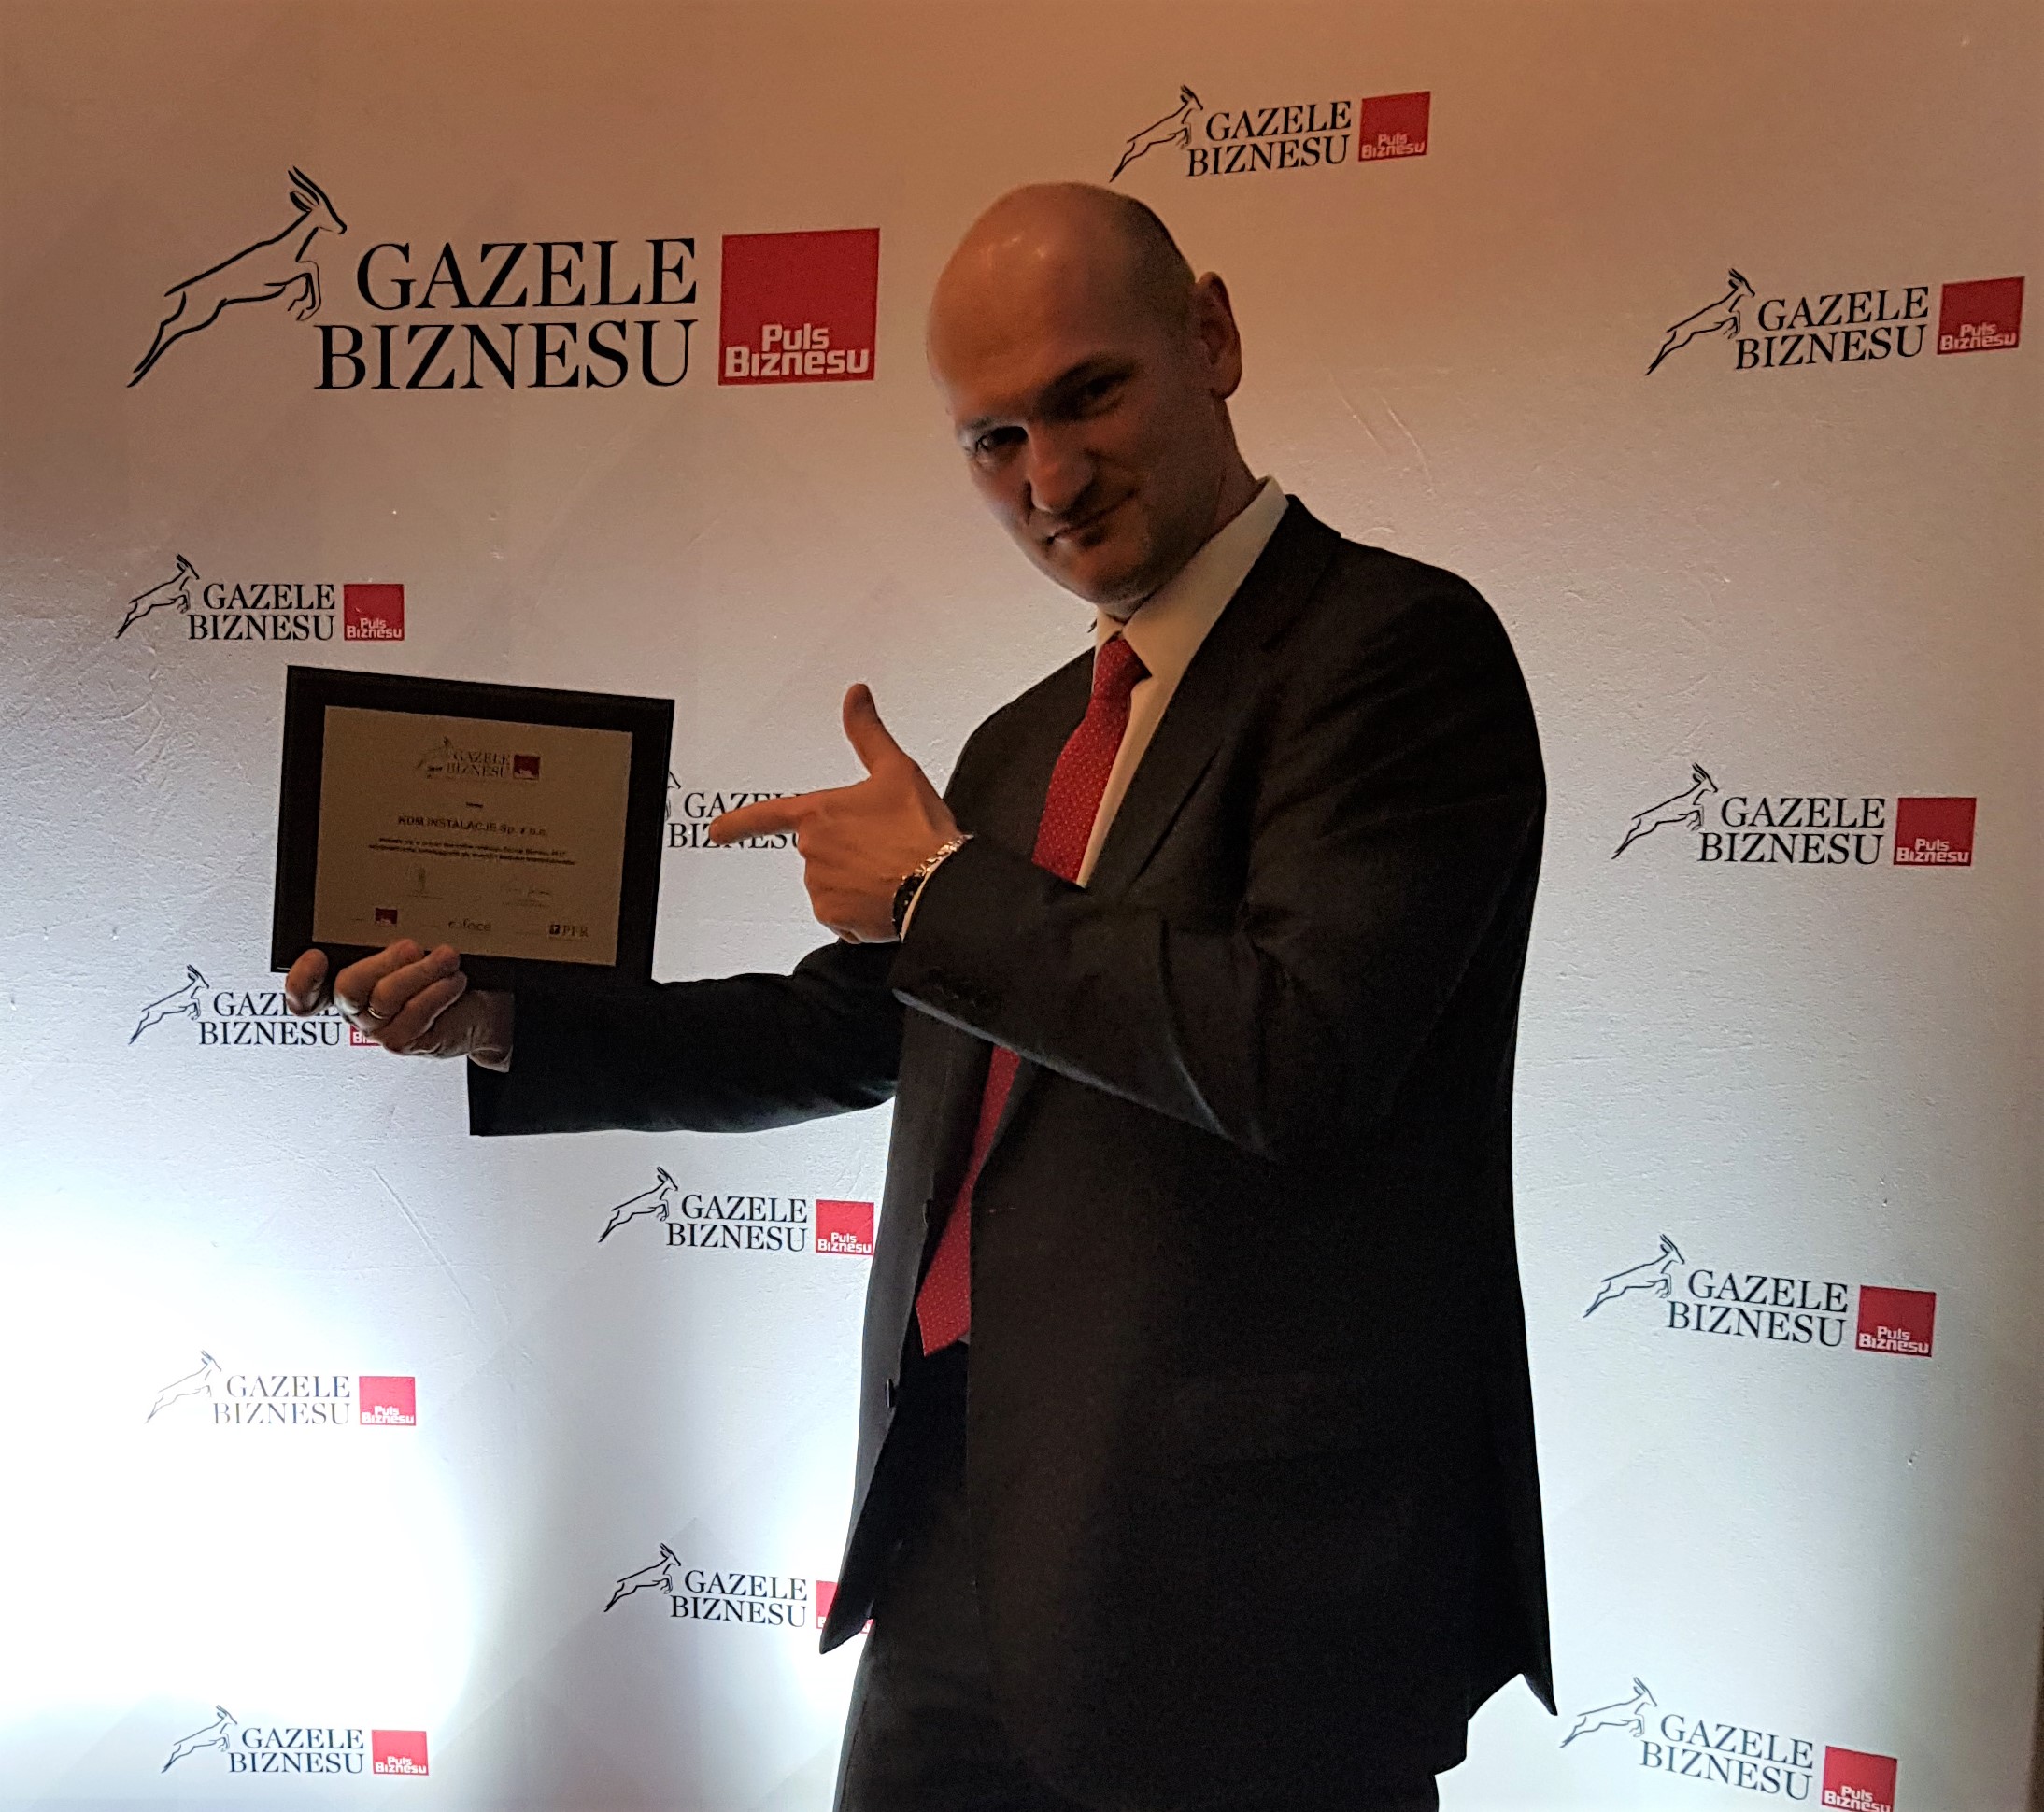 zdjęcie przedstawia prezesa spółki trzymającego w ręku dyplom Gazel Biznesu